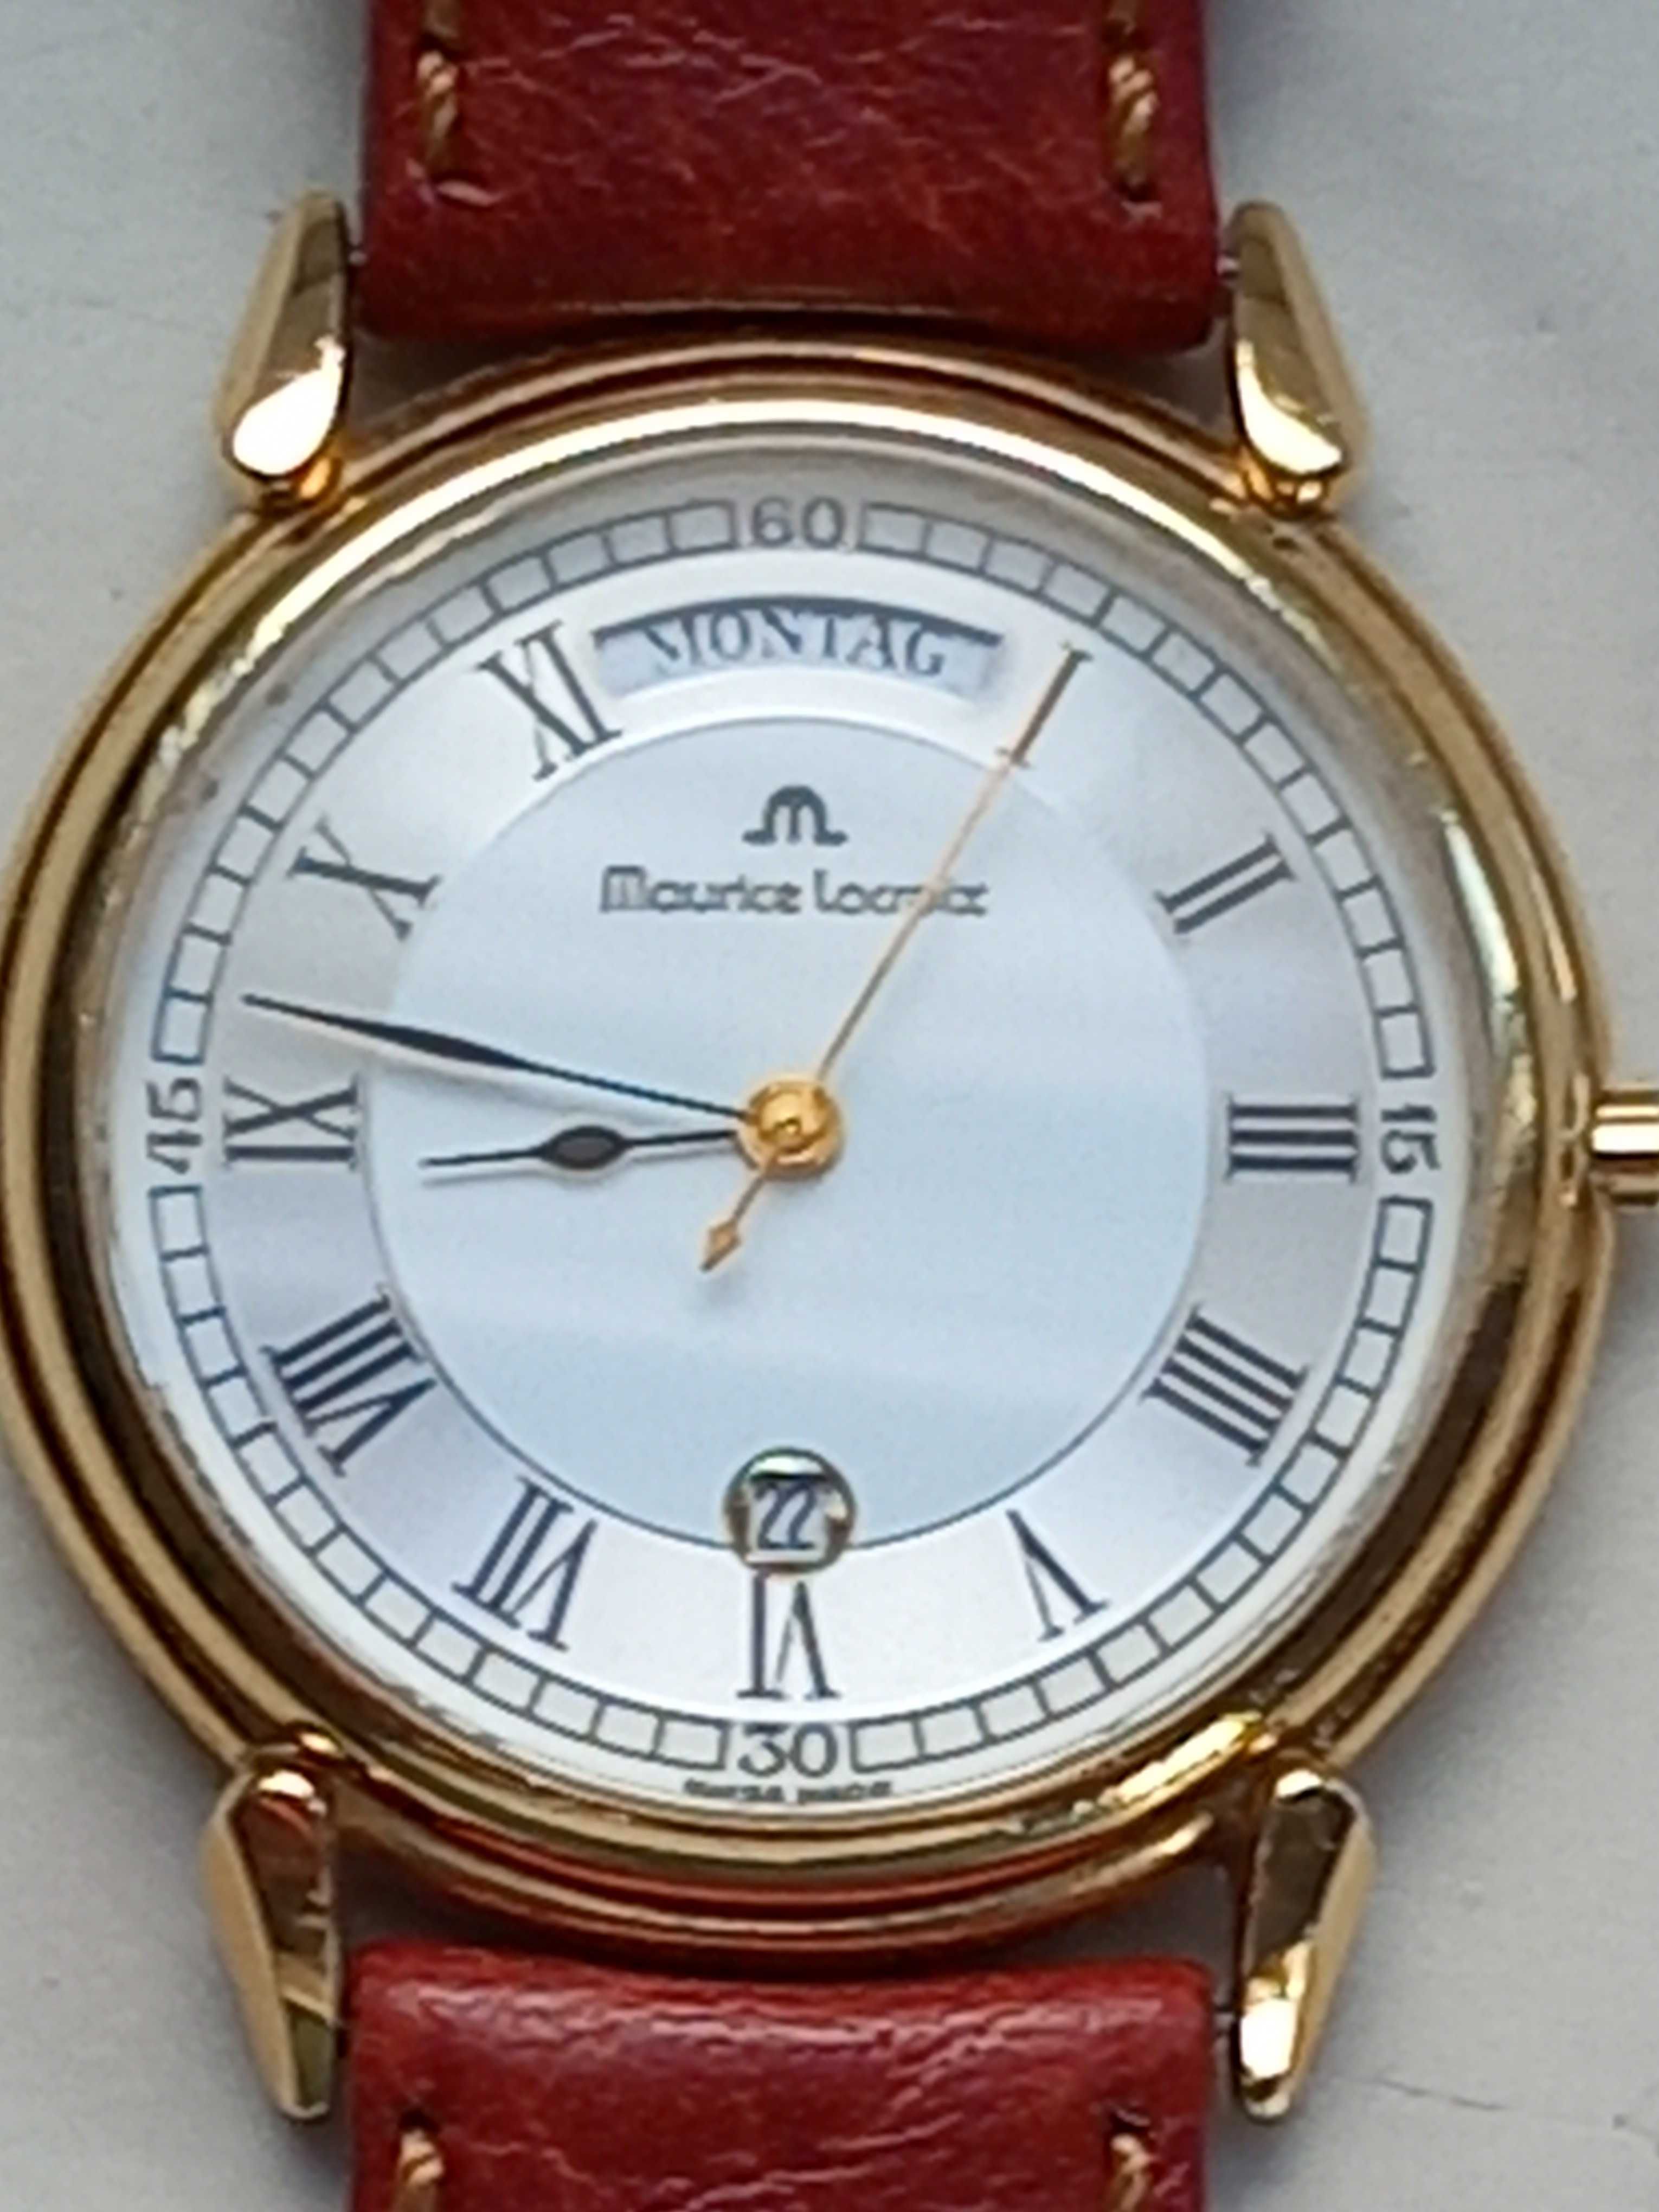 zegarek Maurice locroix z lat 90 tych orginał swiss made